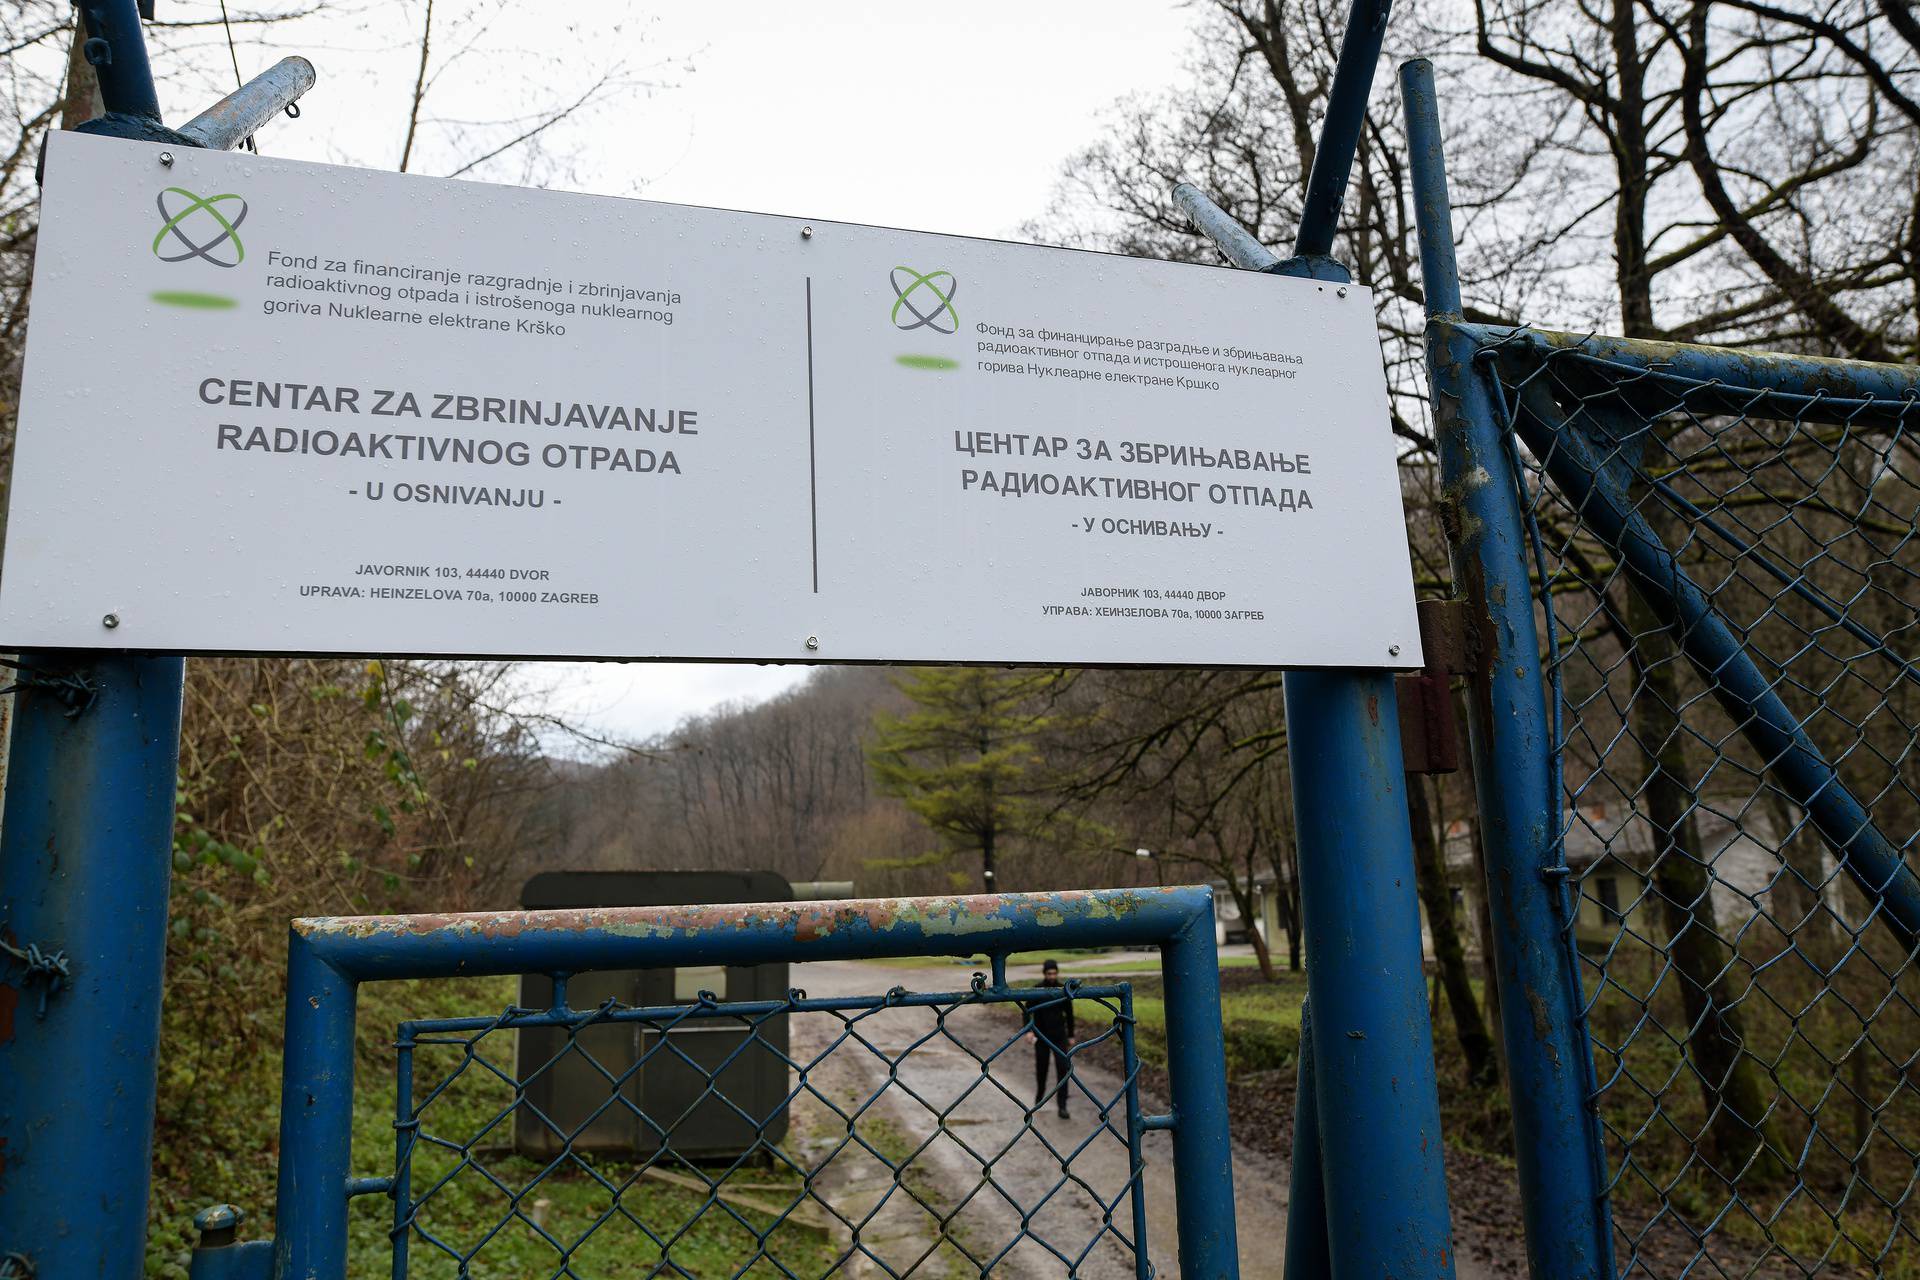 'Ovdje će Hrvatska izgraditi skladište za nuklearni otpad, blizu epicentra velikog potresa'